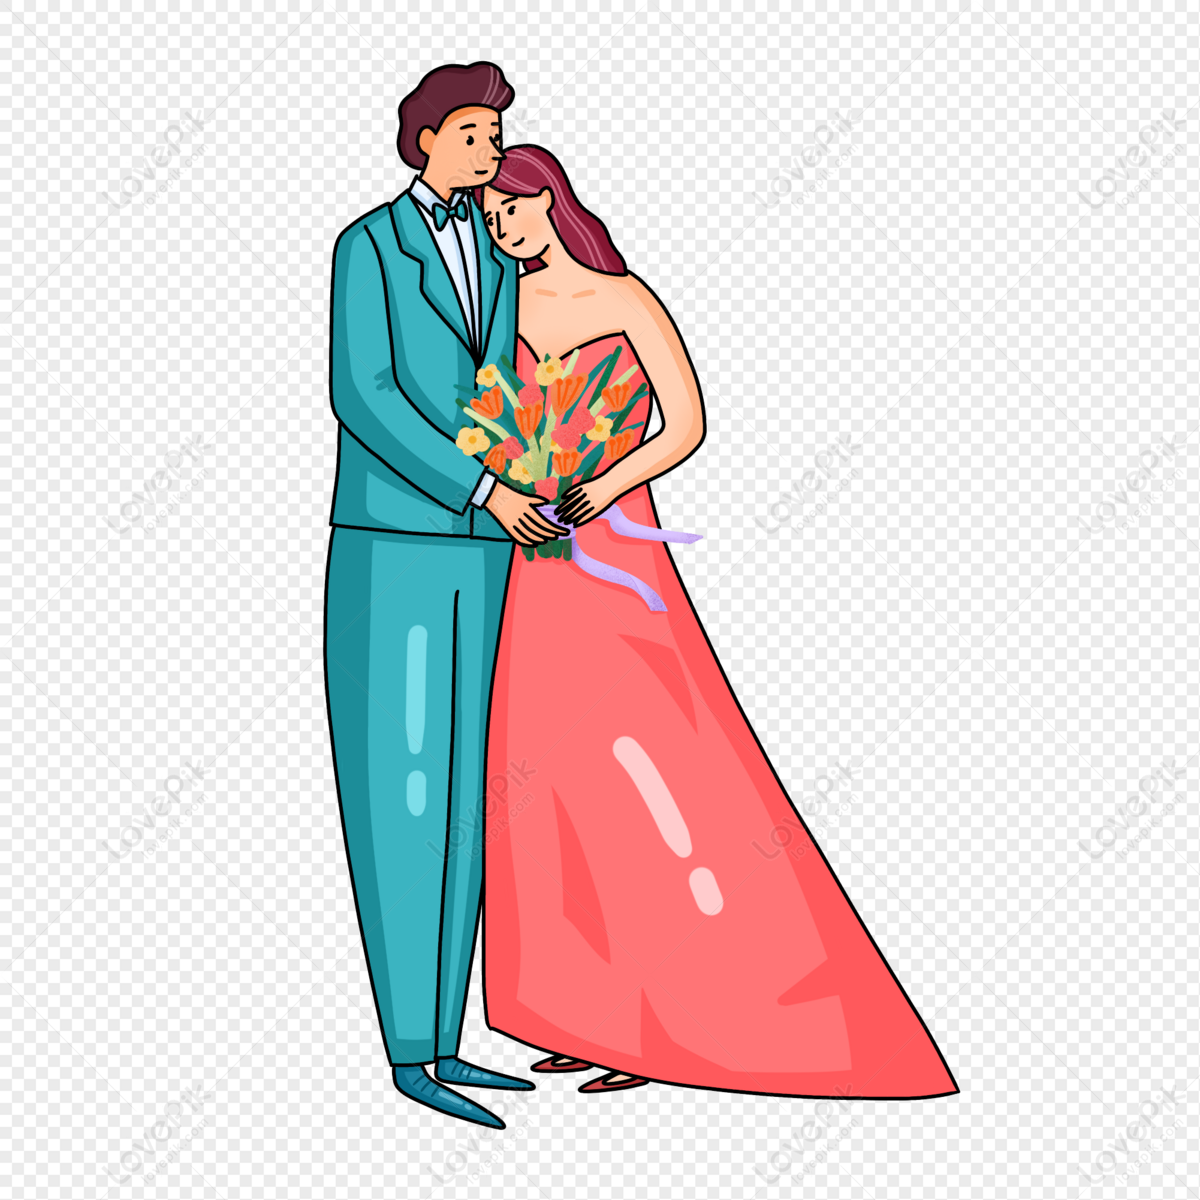 हाथ से खींची गई जोड़ी शादी के गले कार्टून चरित्र की छवि चित्र  डाउनलोड_ग्राफिक्सPRFचित्र आईडी401198213_PSDचित्र  प्रारूपमुफ्त की तस्वीर